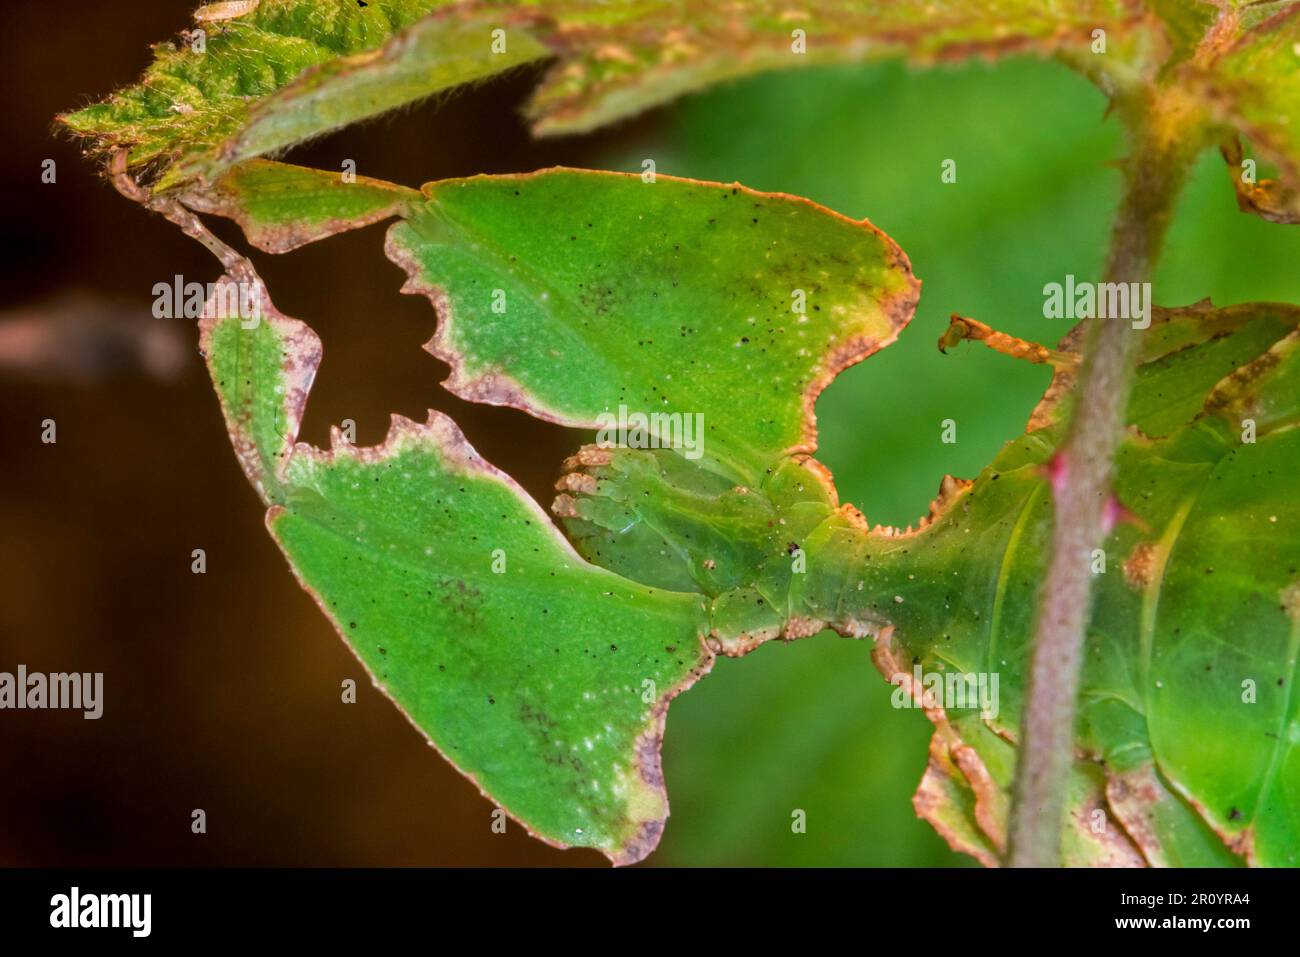 Nahaufnahme von Pulchriphyllium-Arten, Blattinsekten/Wanderblättern, die in den tropischen Wäldern Asiens heimisch sind, bemerkenswert getarnte Blattimitierungen/Mimesis Stockfoto